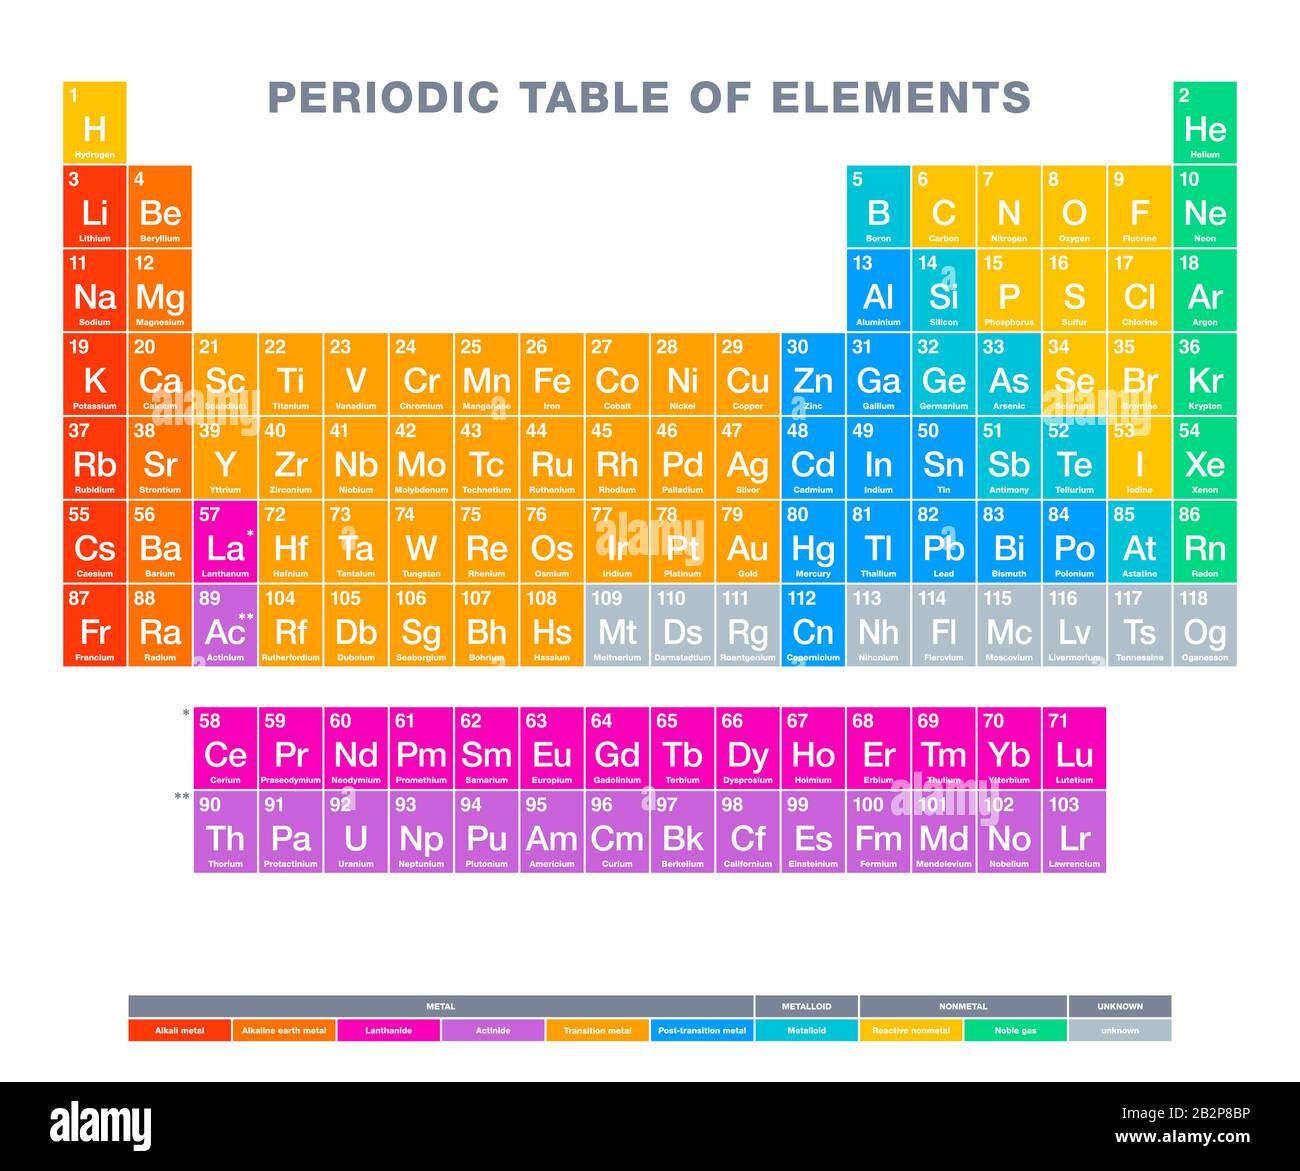 Tavola periodica degli elementi. Tabella periodica multicolore. Visualizzazione tabellare degli elementi chimici. Con numeri atomici, nomi chimici e simboli. Foto Stock